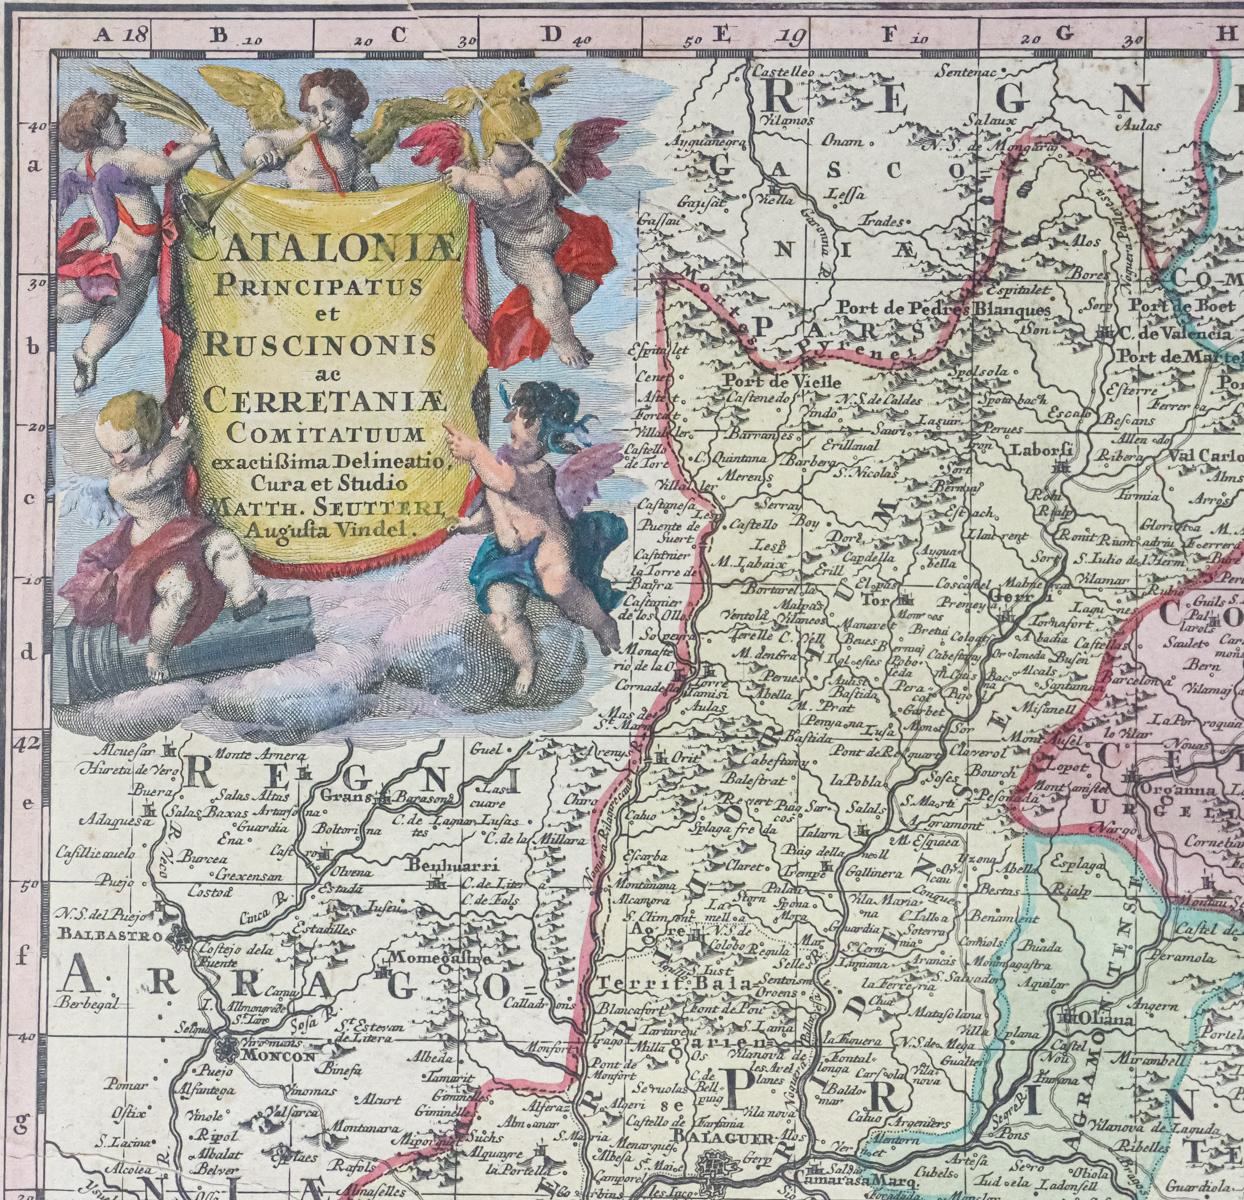 MAPA ALEMÁN "CATALONIAE PRINCIPATUS ET RUSCINONIS" 1735